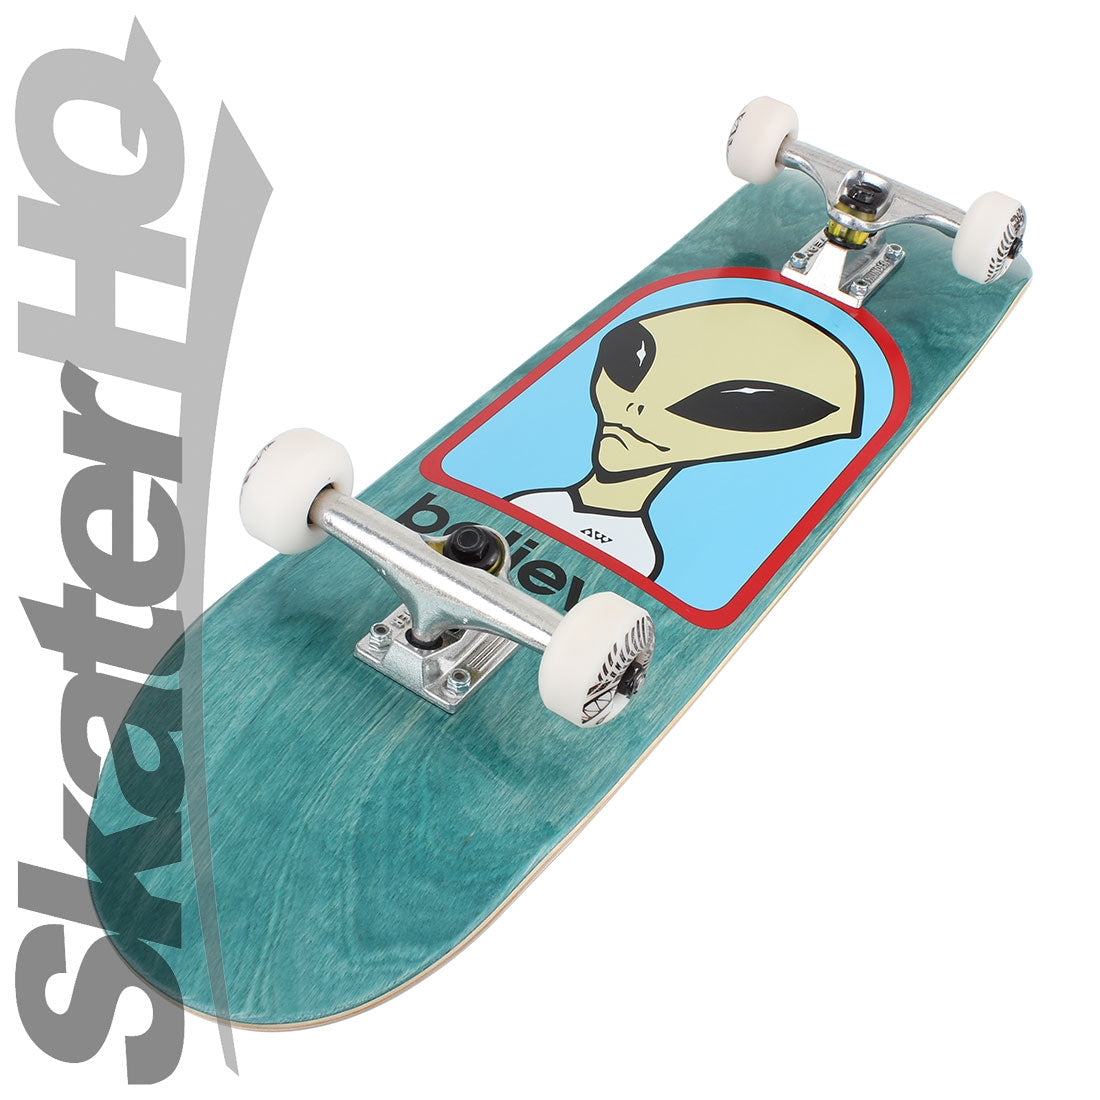 Alien Workshop Believe 7.75 Complete - Green Skateboard Completes Modern Street